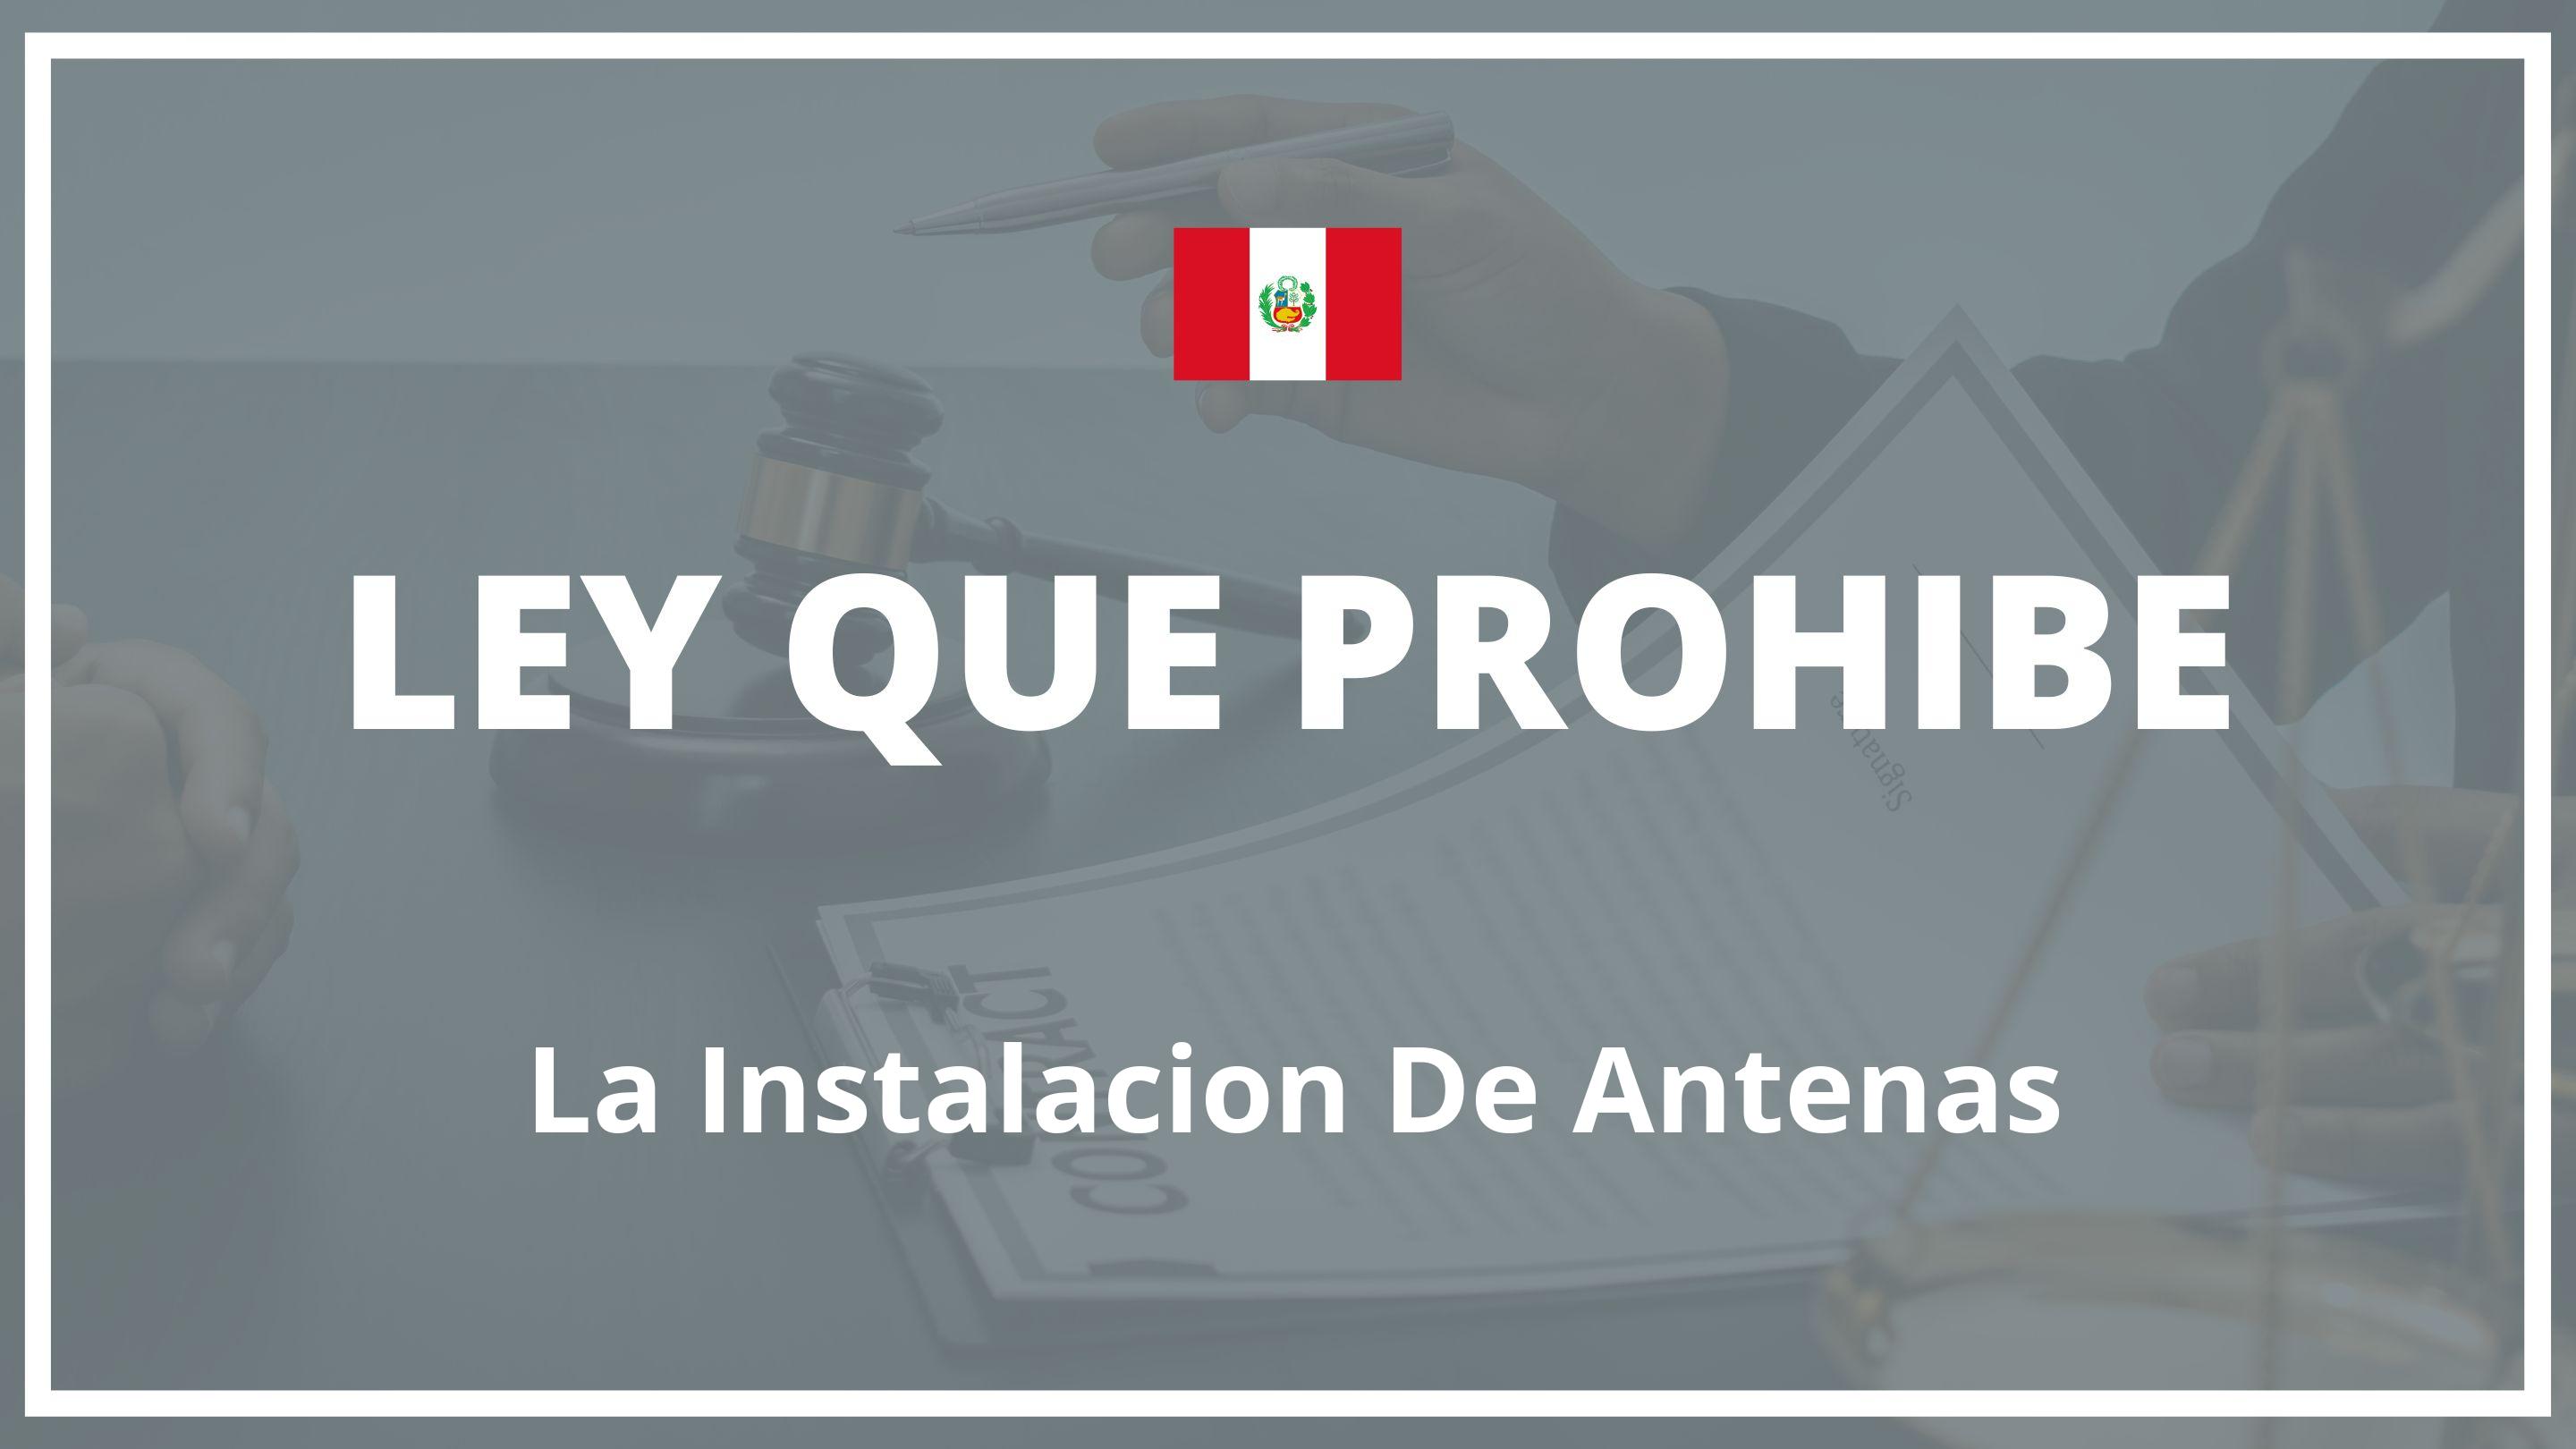 Ley que prohibe la instalacion de antenas Peru